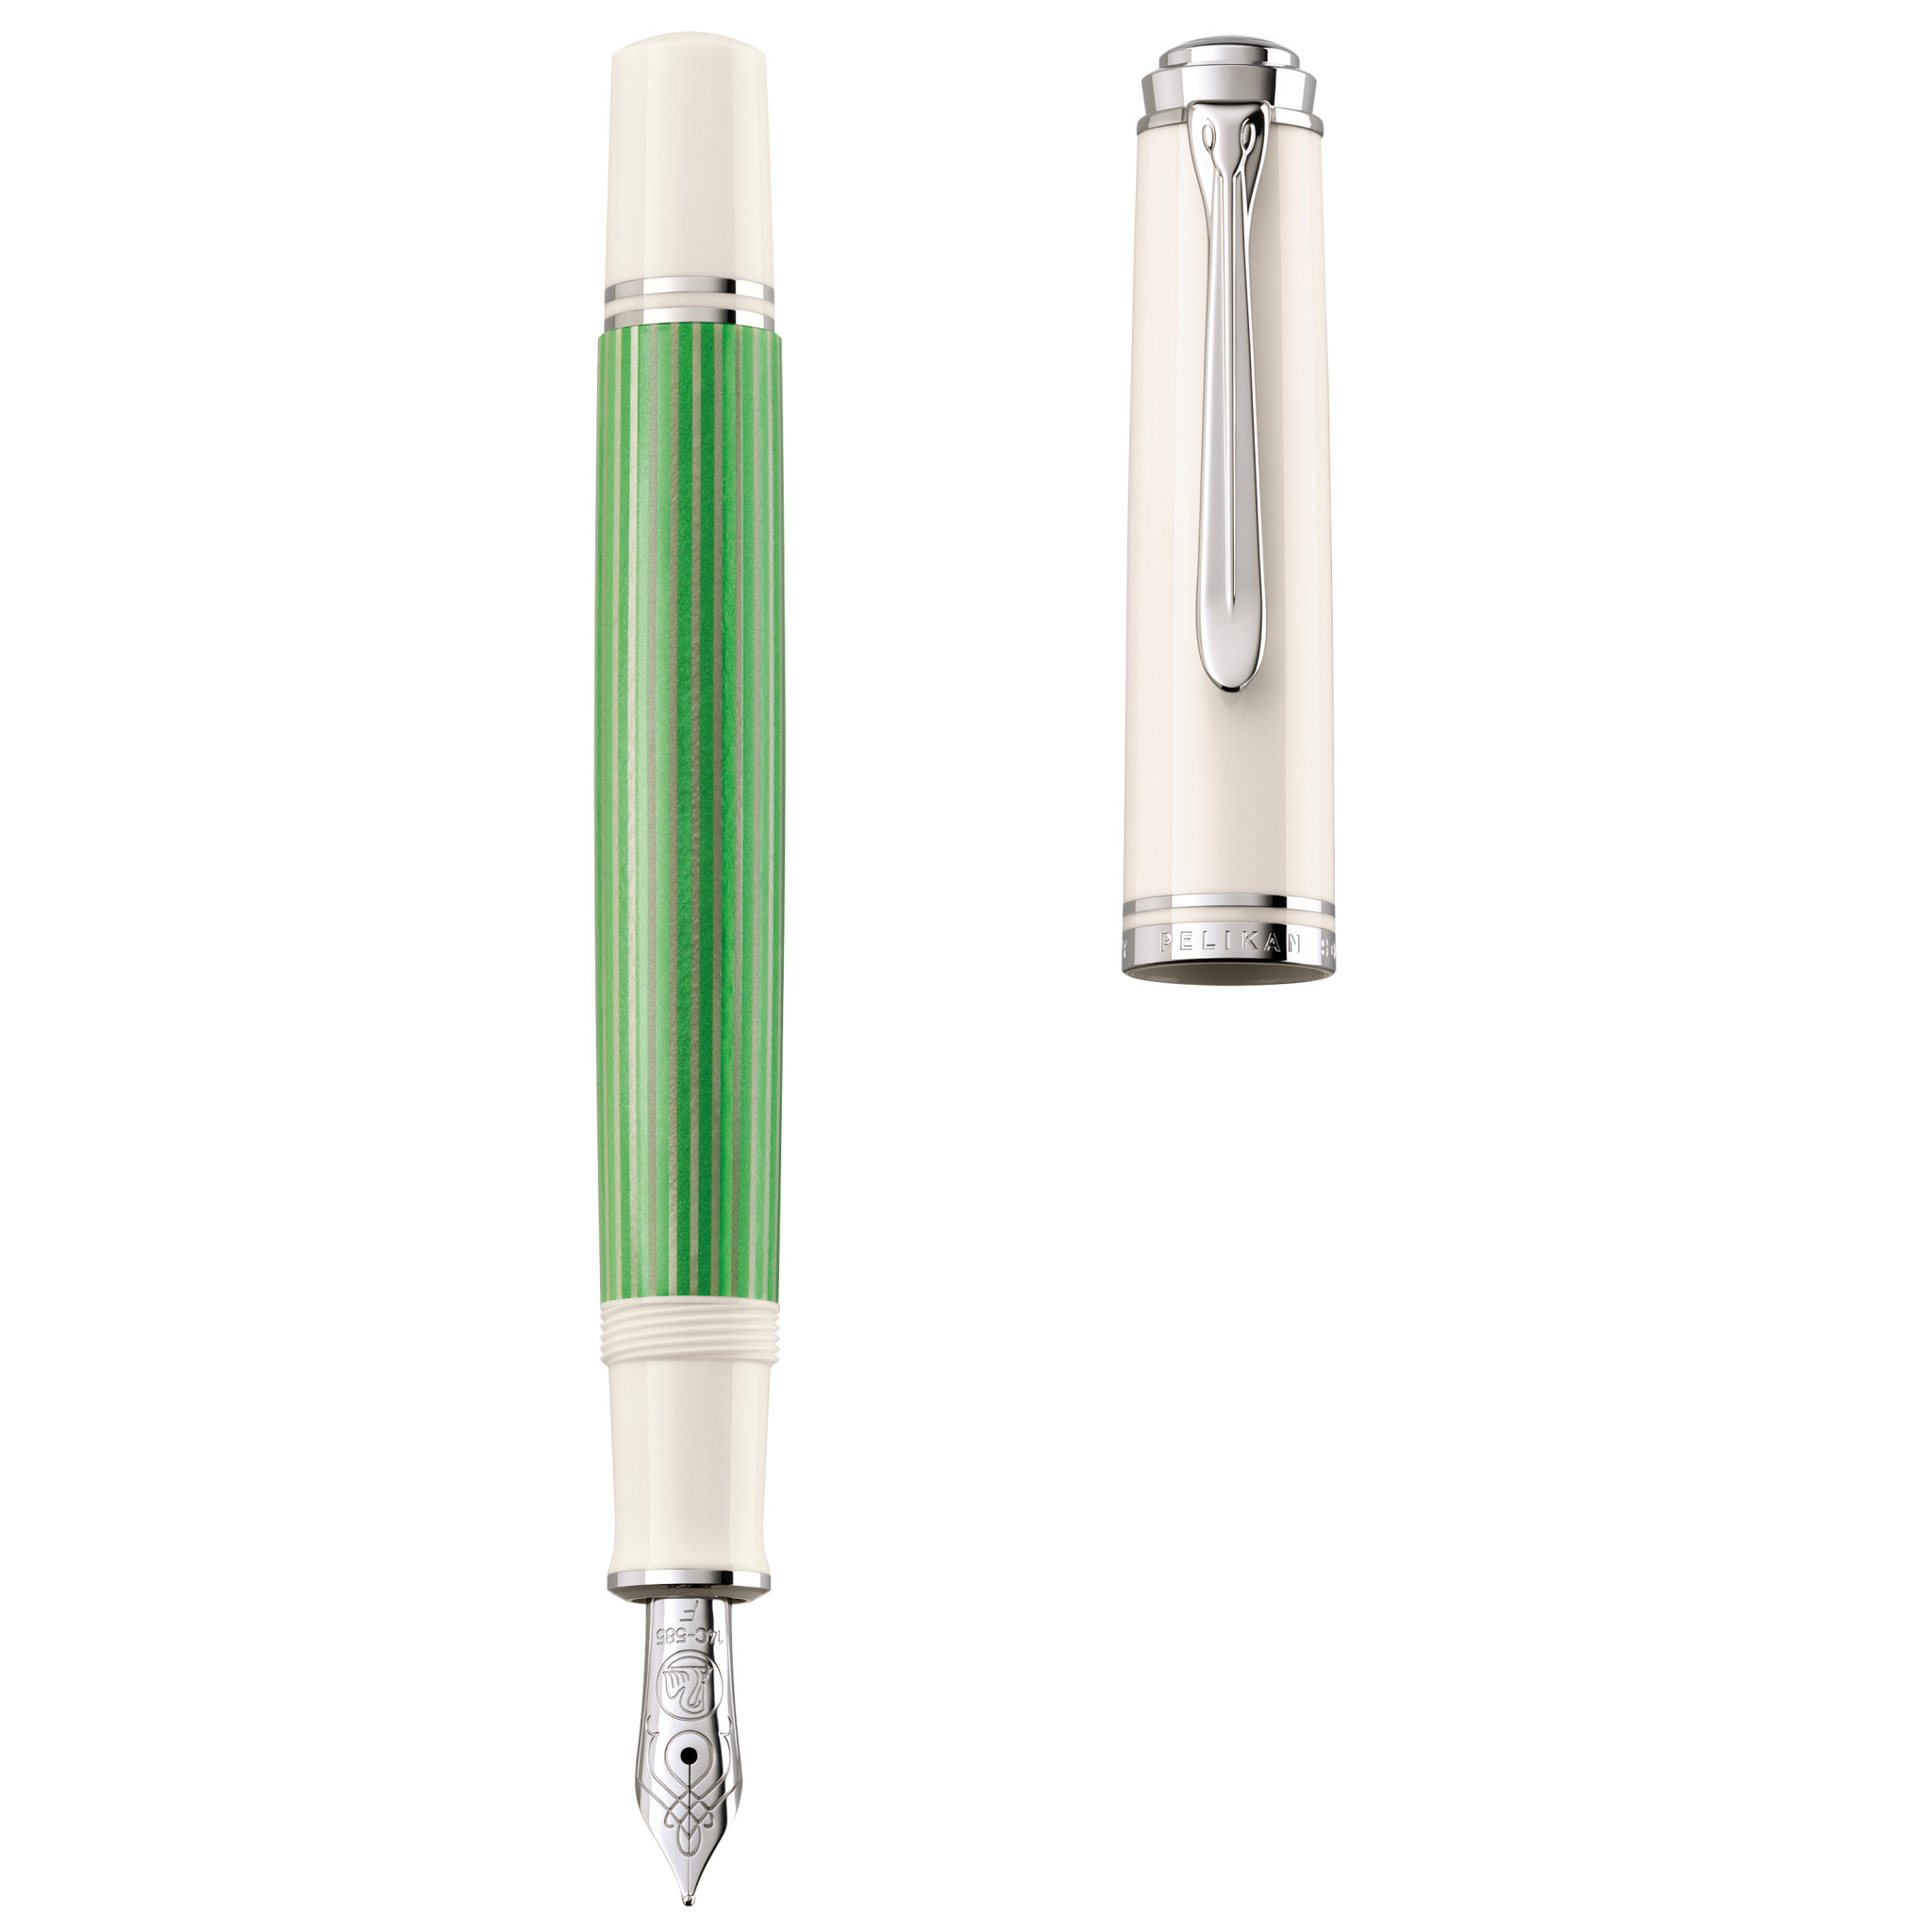 Pelikan Souverän 605 Green-White Special Edition